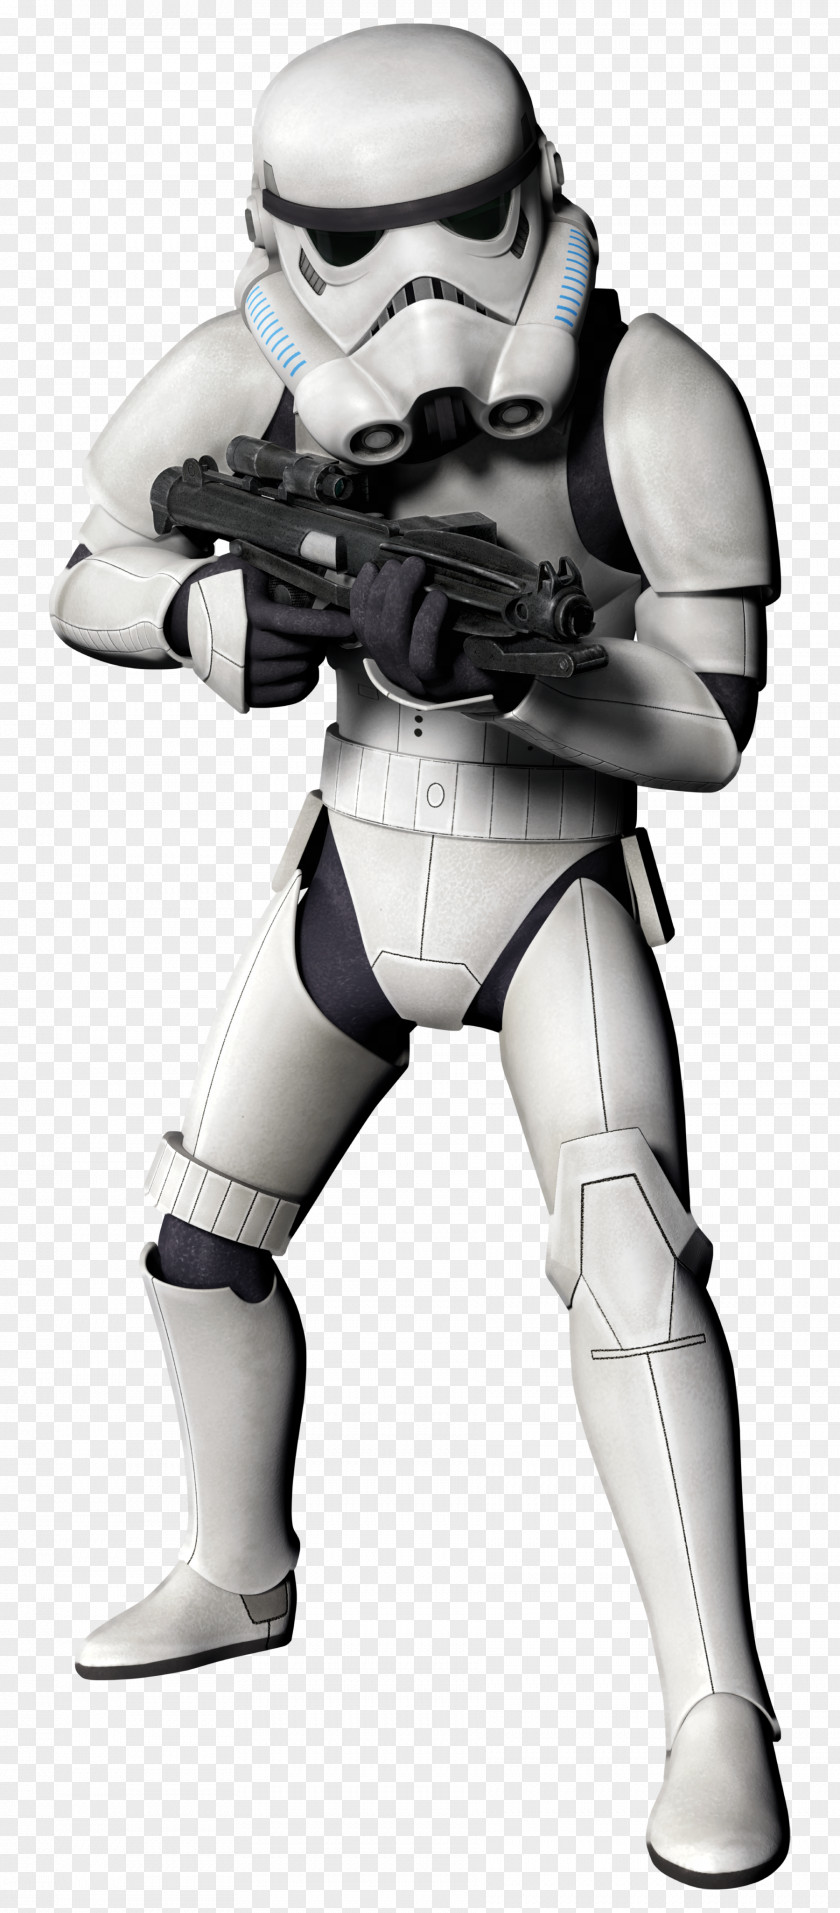 Star Wars Luke Skywalker Stormtrooper Wookieepedia Galactic Empire PNG